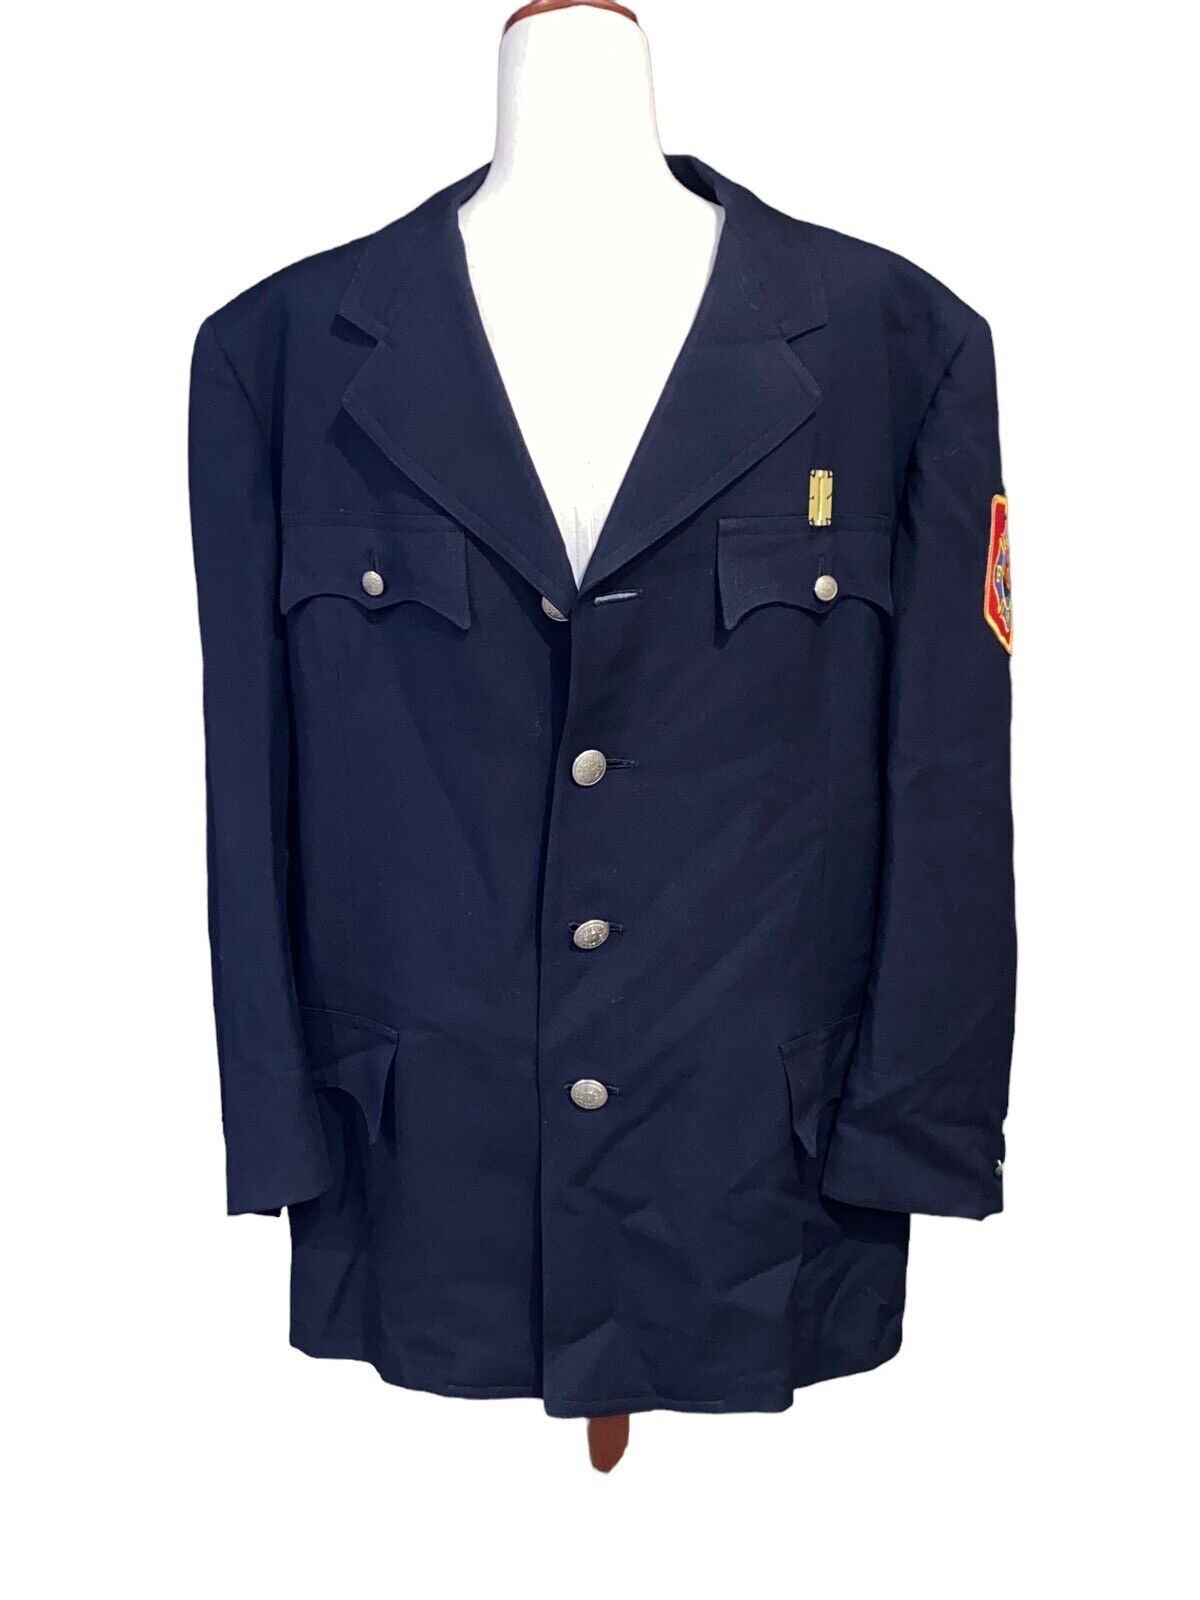 Cleveland Fire Department 1950’s Blazer Jacket Patch Buttons Size 42 Short Est